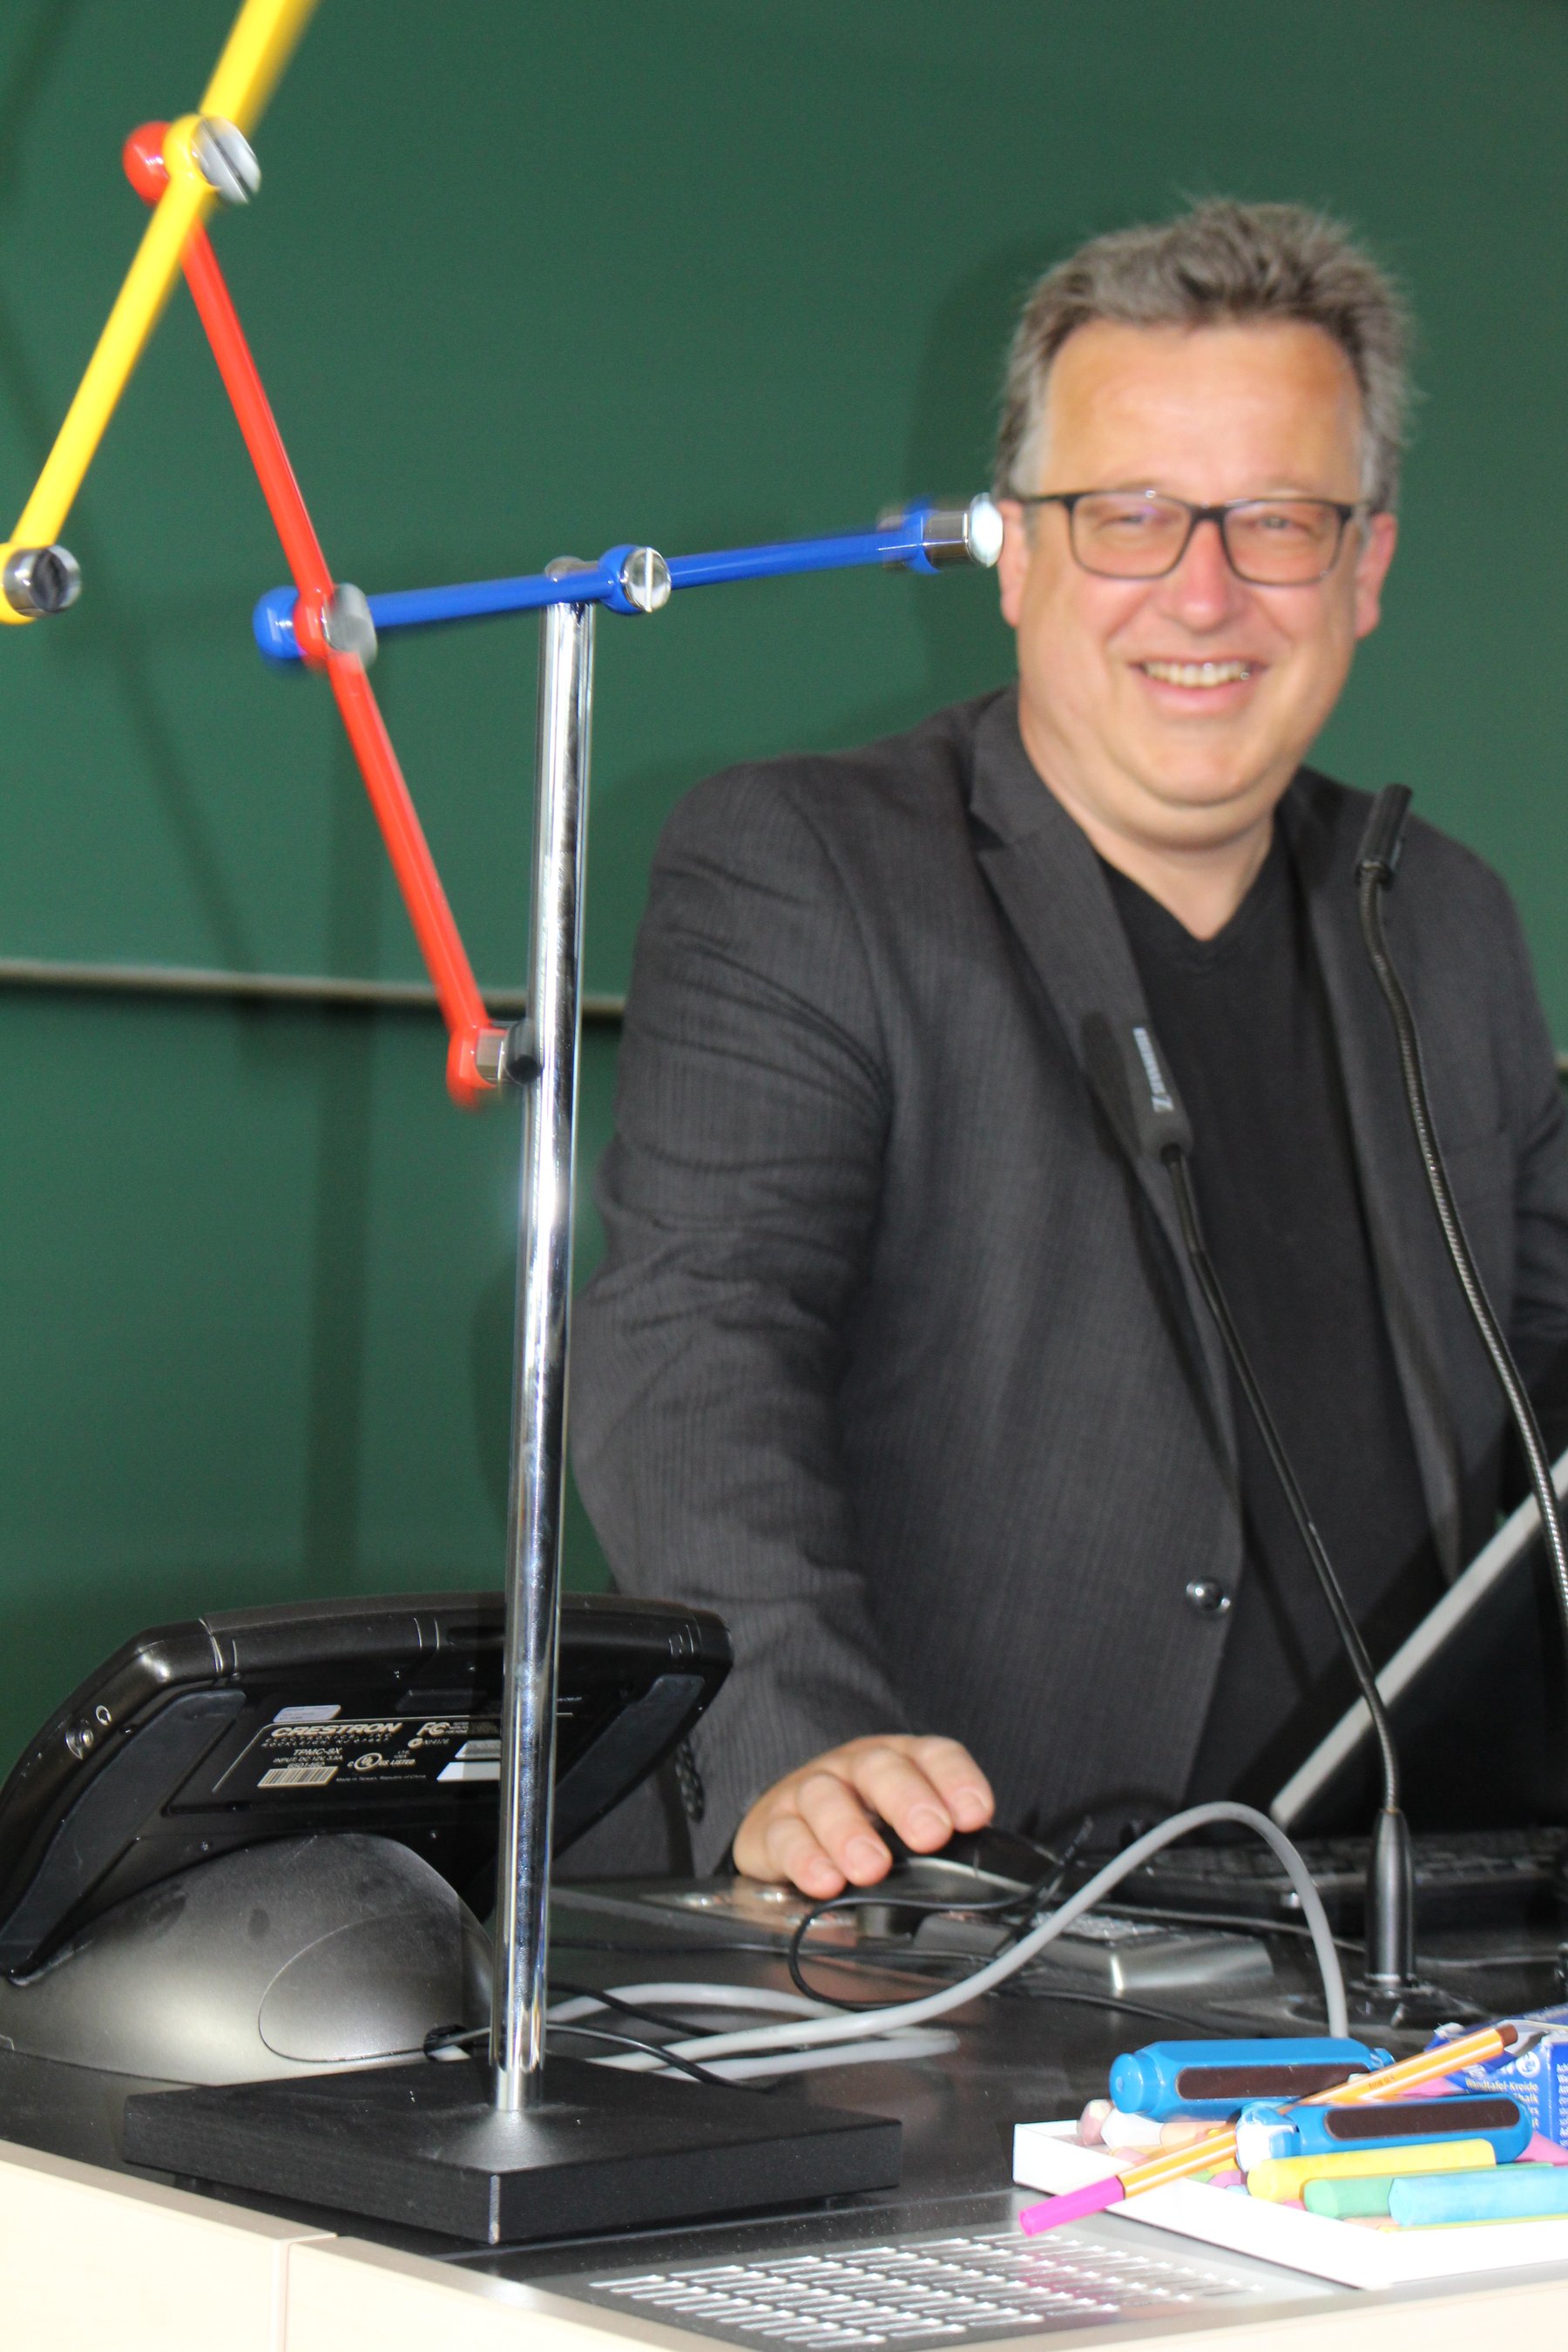 Mann lächelt Physikexperiment mit dreifarbigen wirbelnden Stangen an